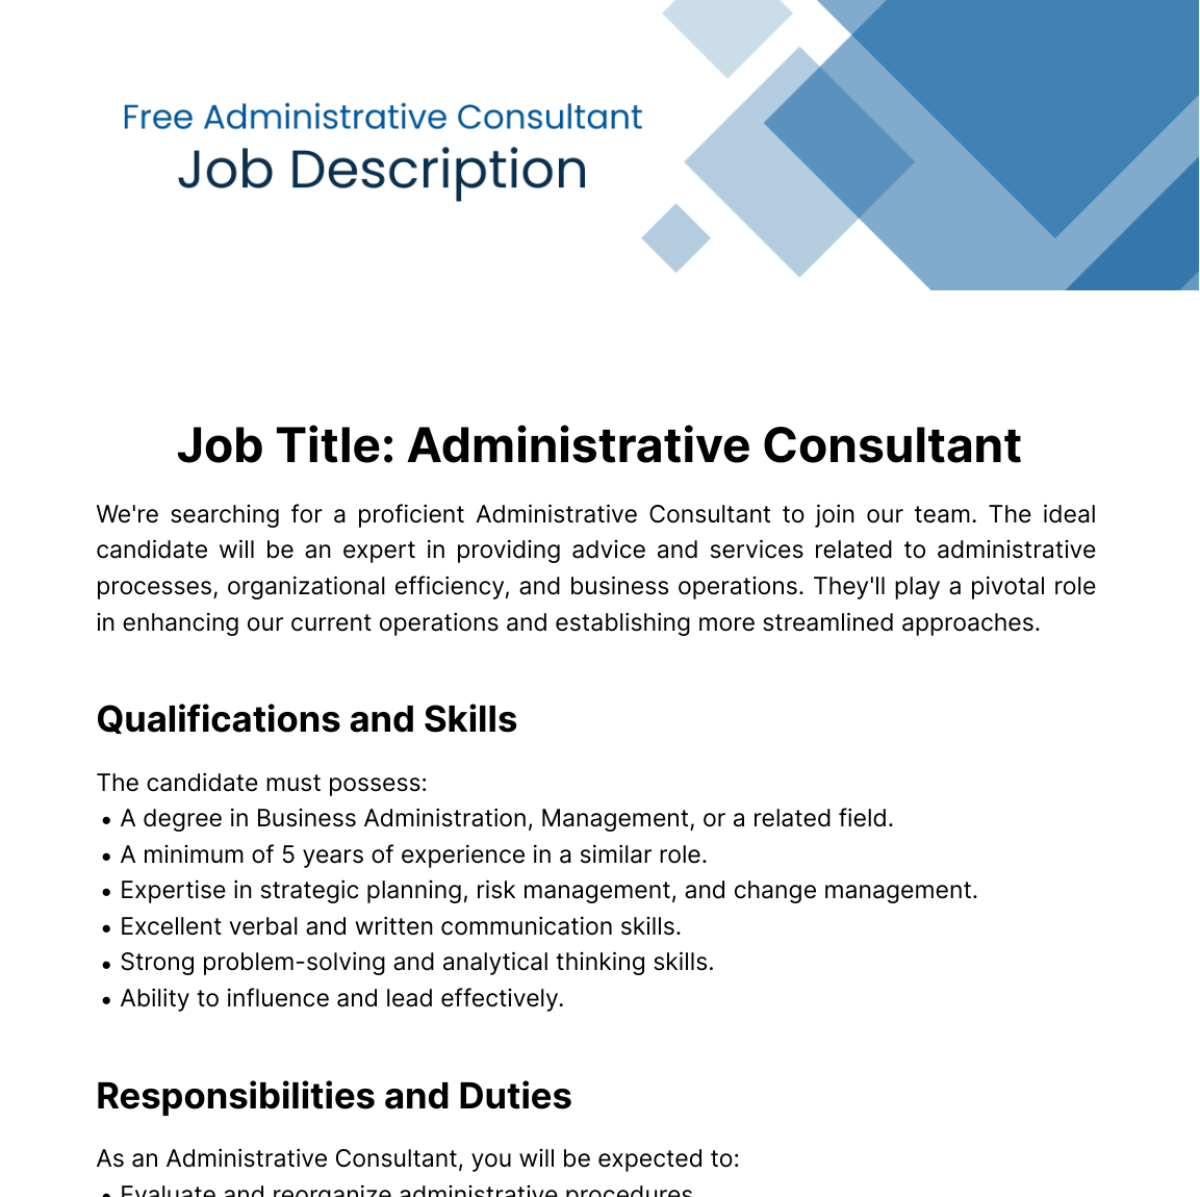 Free Administrative Consultant Job Description Template